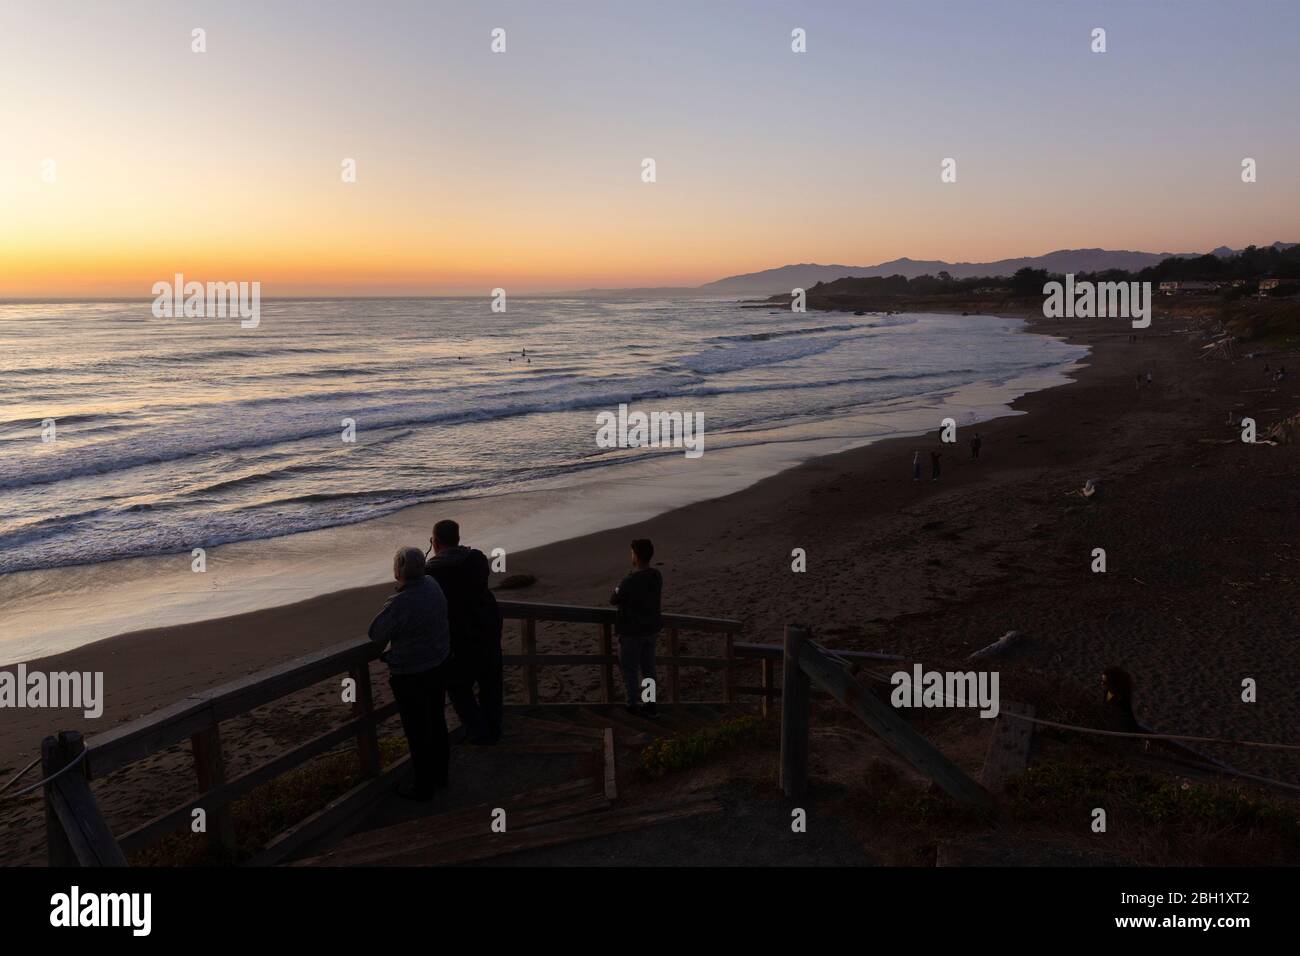 CAMBRIA, VEREINIGTE STAATEN - SEPTEMBER 21, 2019 : Sonnenuntergang am Moonstone Beach an der kalifornischen Küste mit Menschen beobachten die Abend Surfer. Stockfoto